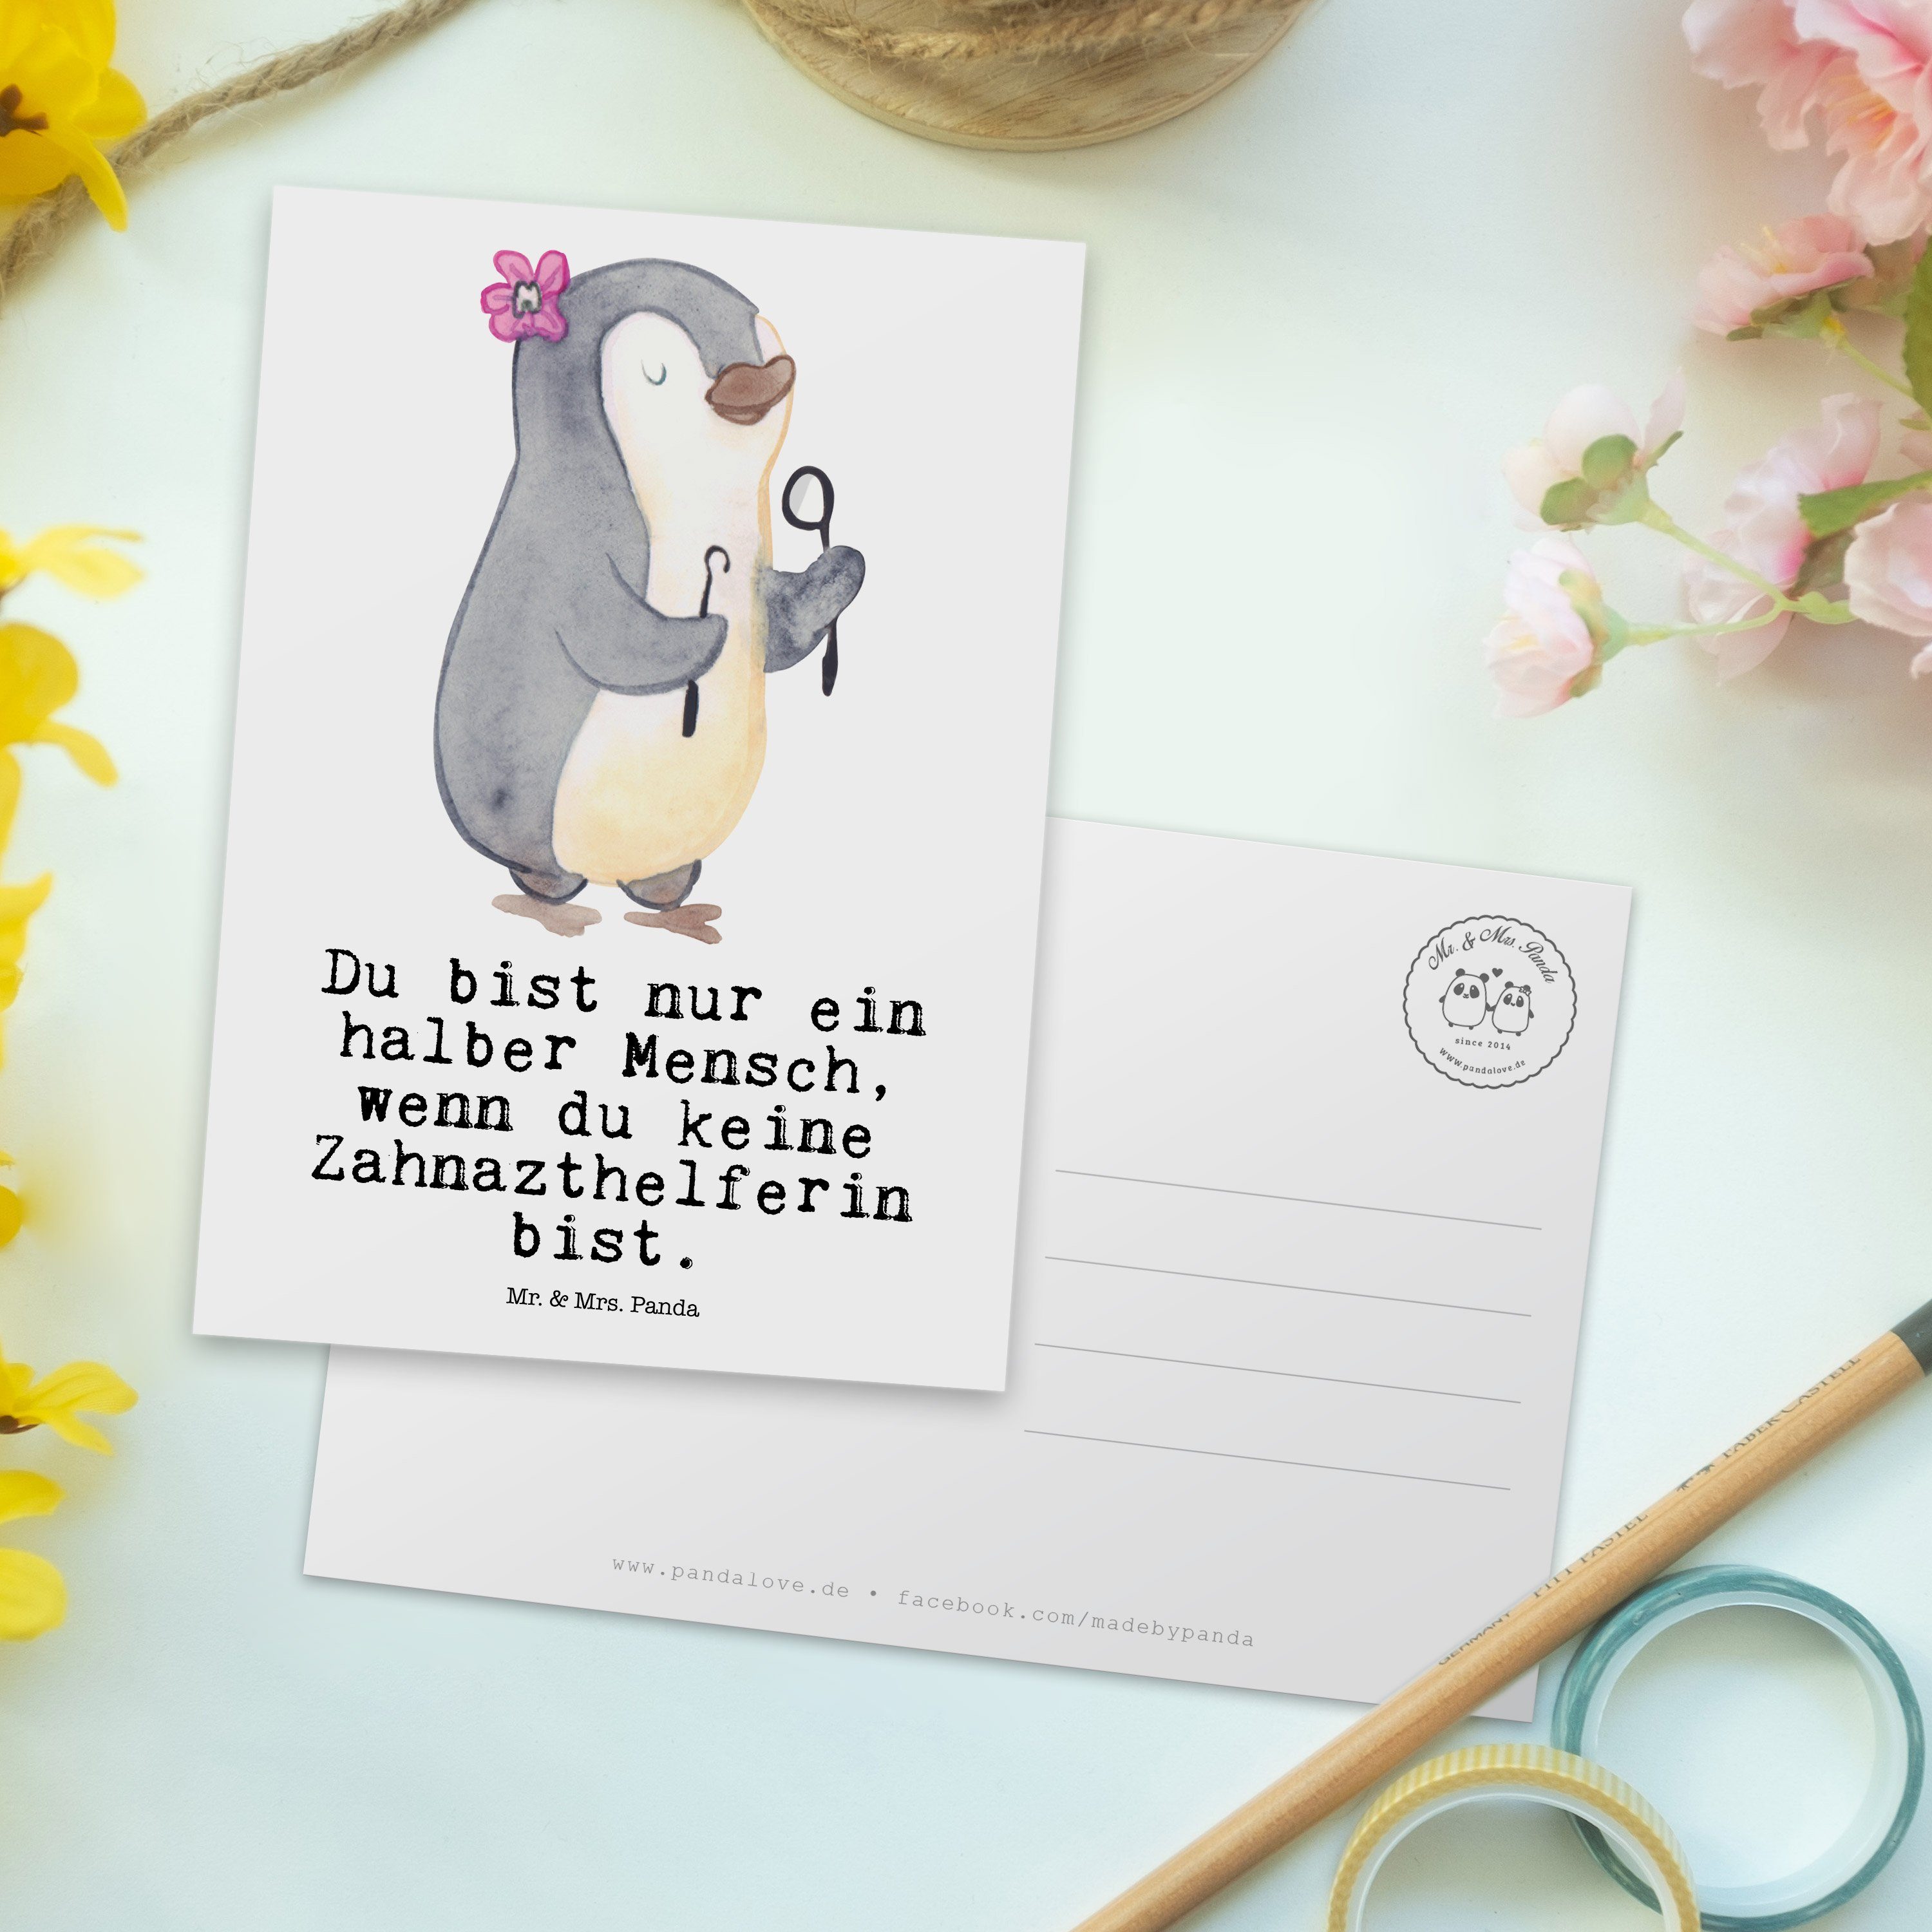 Mr. & Mrs. Panda Postkarte Geschenk, - Danke, Einladung, Zahnarzthelferin - mit Grußka Herz Weiß